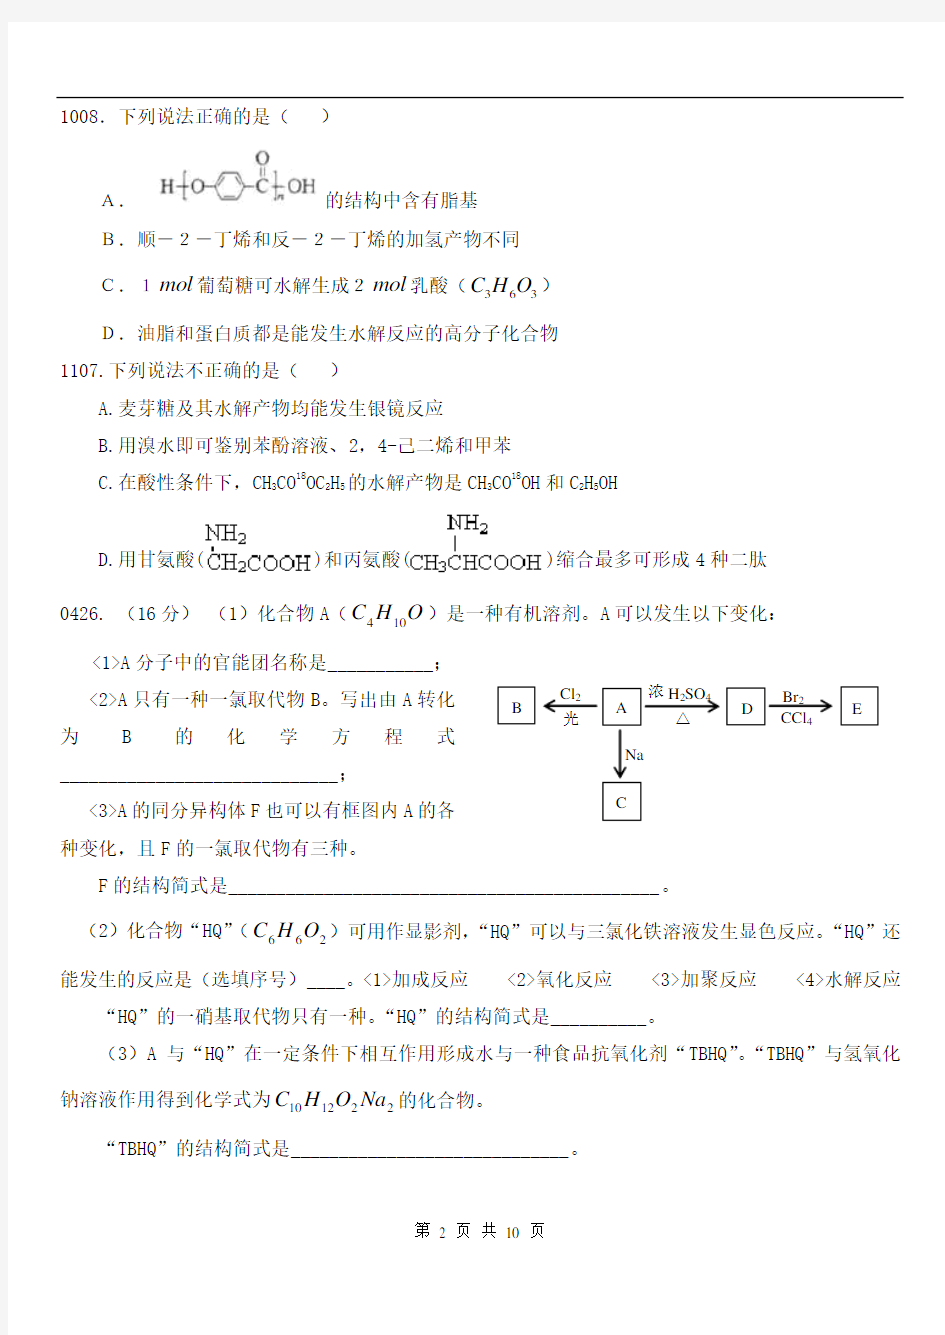 2004-2011北京高考化学有机试题汇总(含答案)